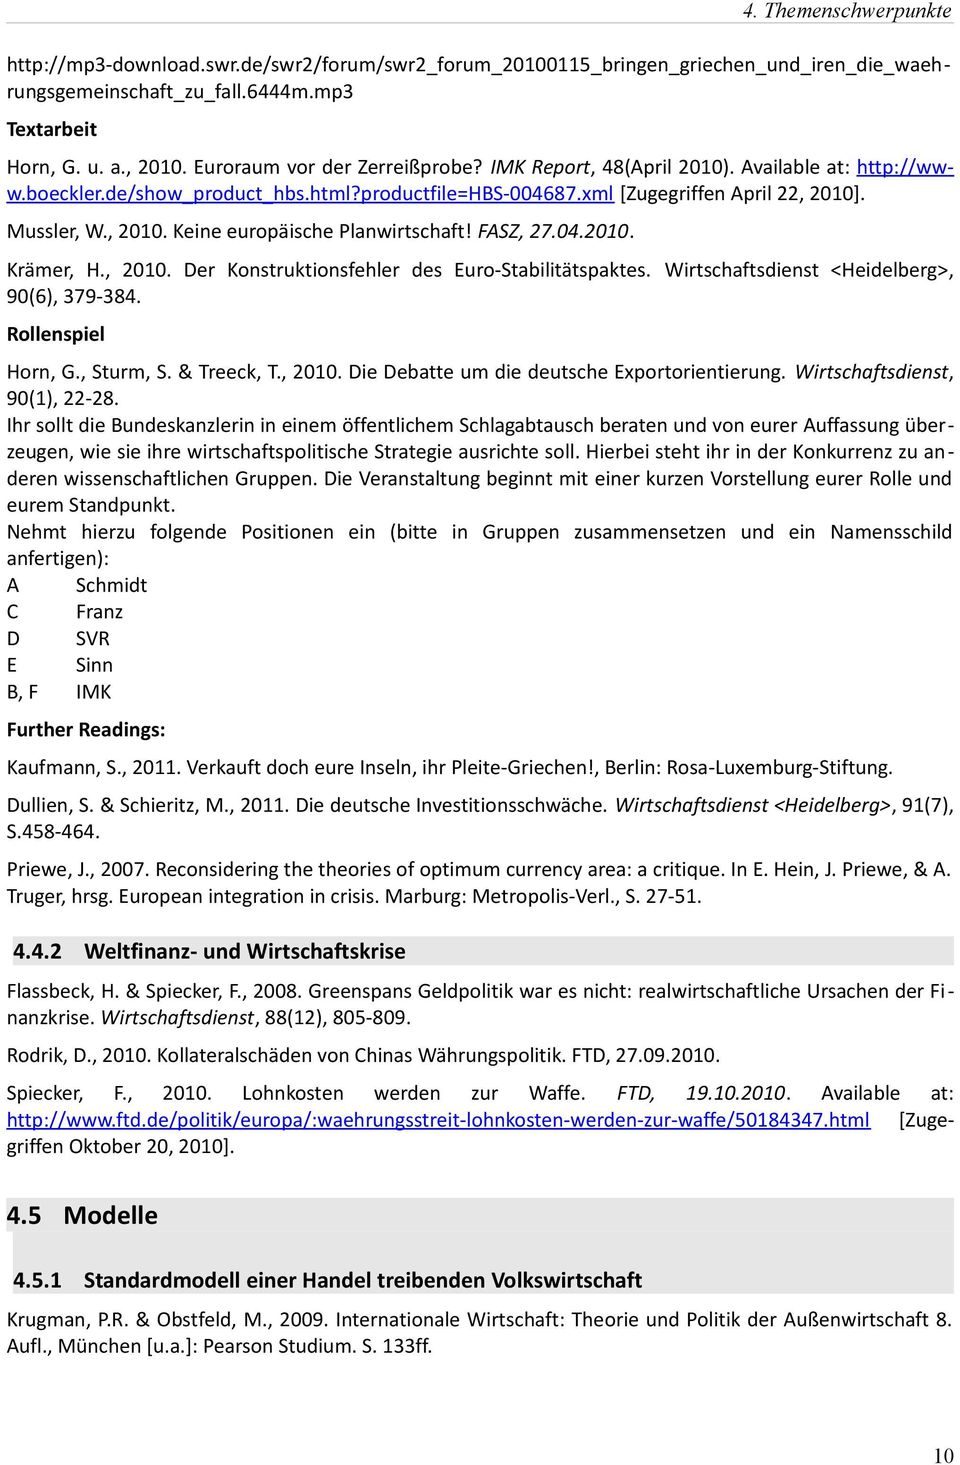 . Mussler, W., 2010. Keine europäische Planwirtschaft! FASZ, 27.04.2010. Krämer, H., 2010. Der Konstruktionsfehler des Euro-Stabilitätspaktes. Wirtschaftsdienst <Heidelberg>, 90(6), 379-384.